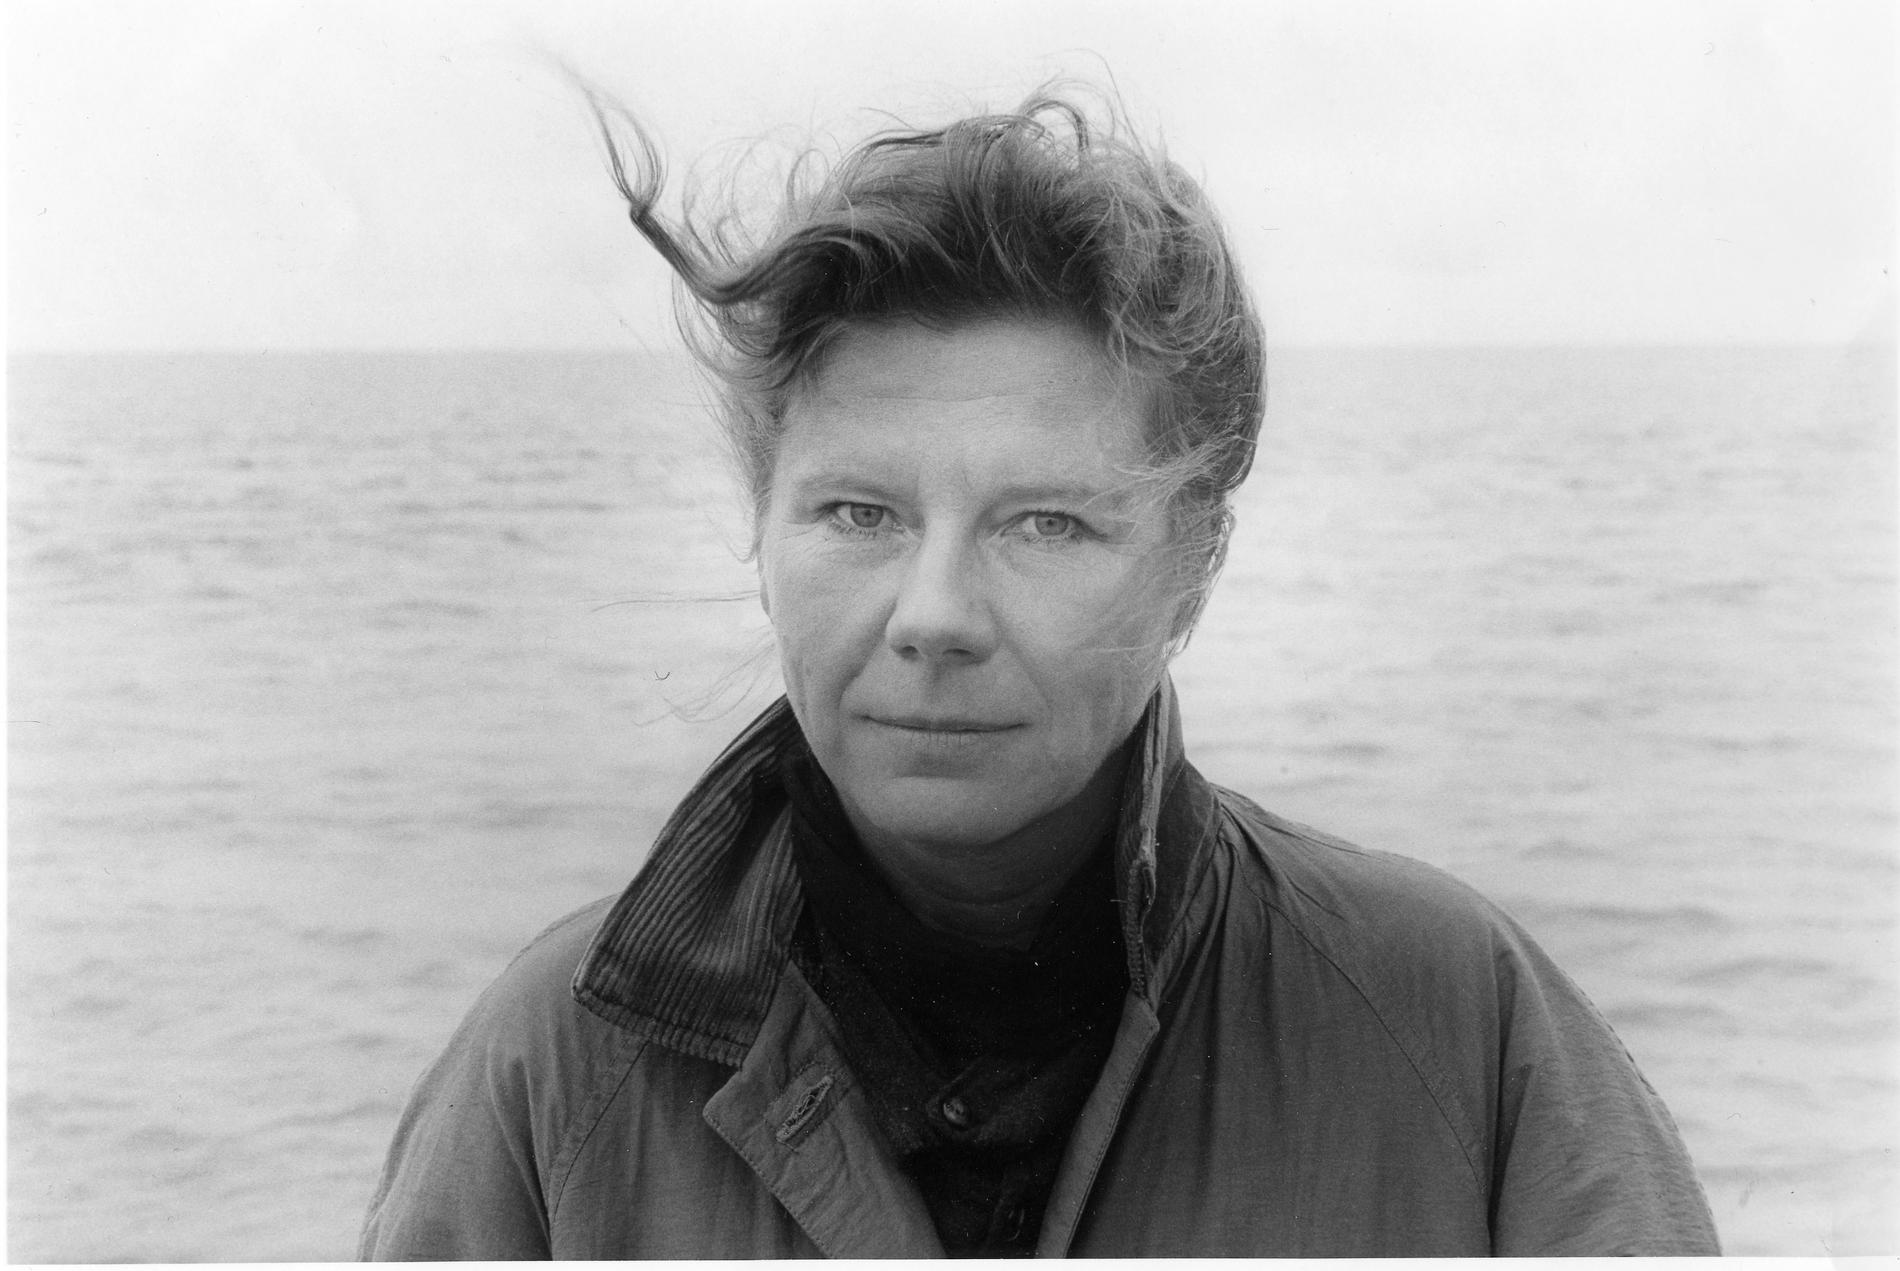 Anne-Marie Berglund har gått bort, 68 år gammal. ”Hon angav riktning åt kvinnliga författare som skrev poesi och kortprosa om destruktivitet och frihetsbegär” skriver Anneli Jordahl.